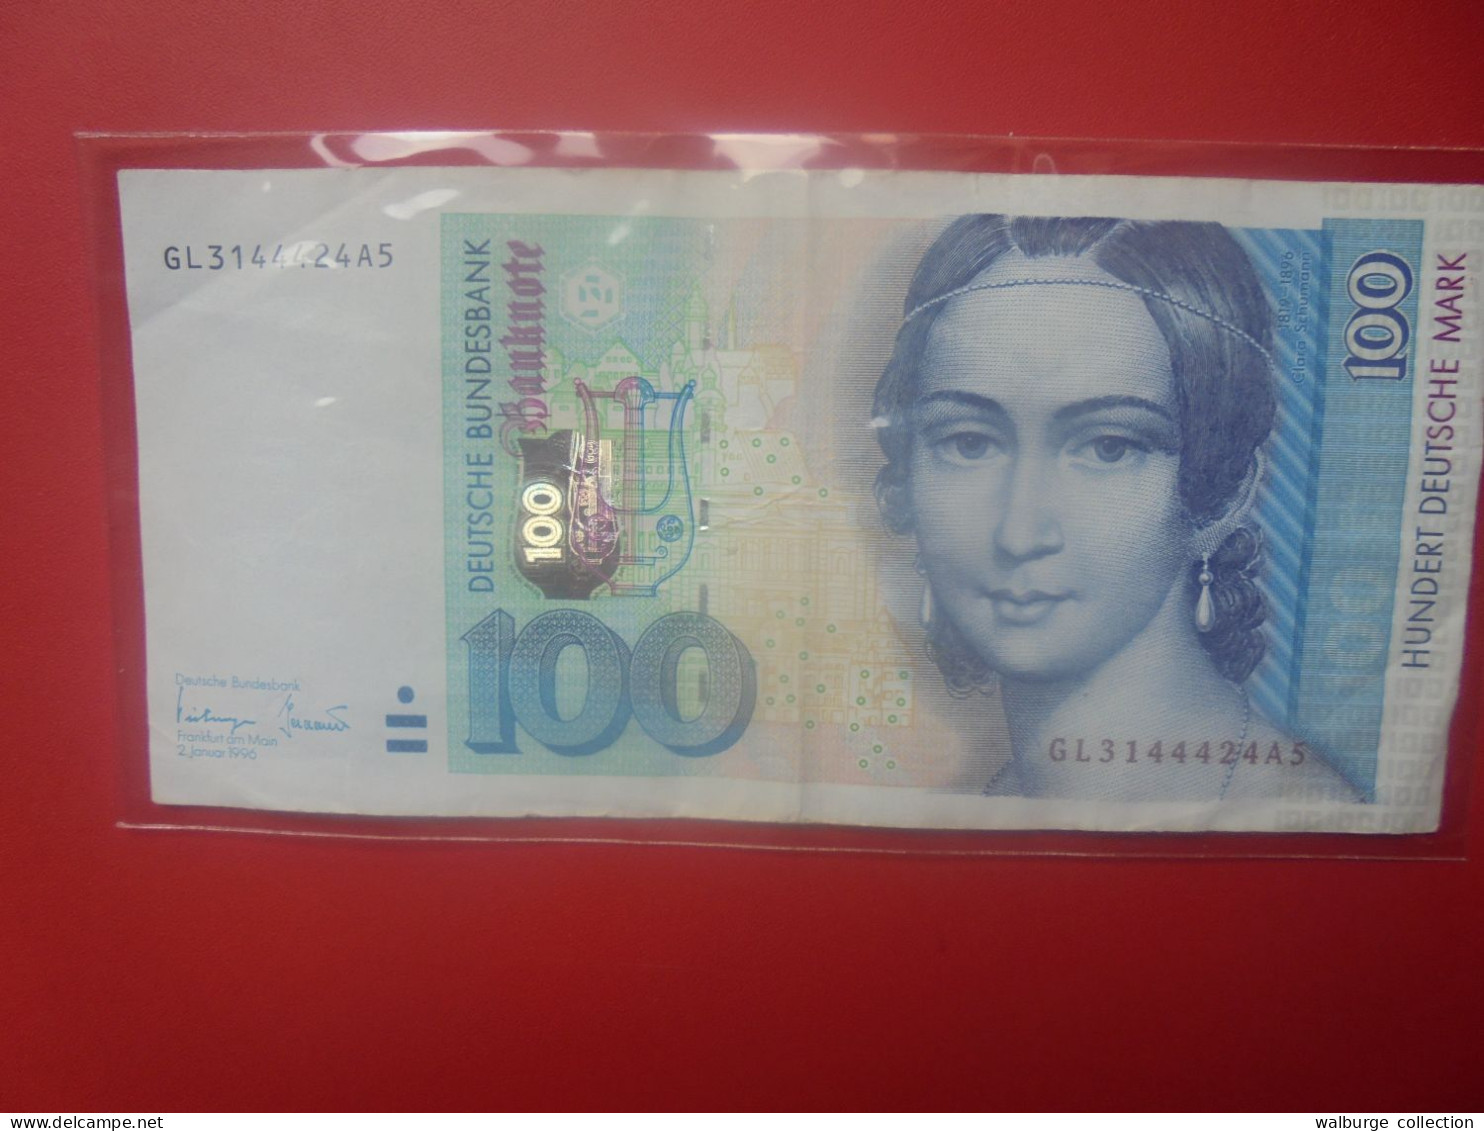 République Fédérale 100 MARK 1996 Circuler (B.33) - 20 Deutsche Mark